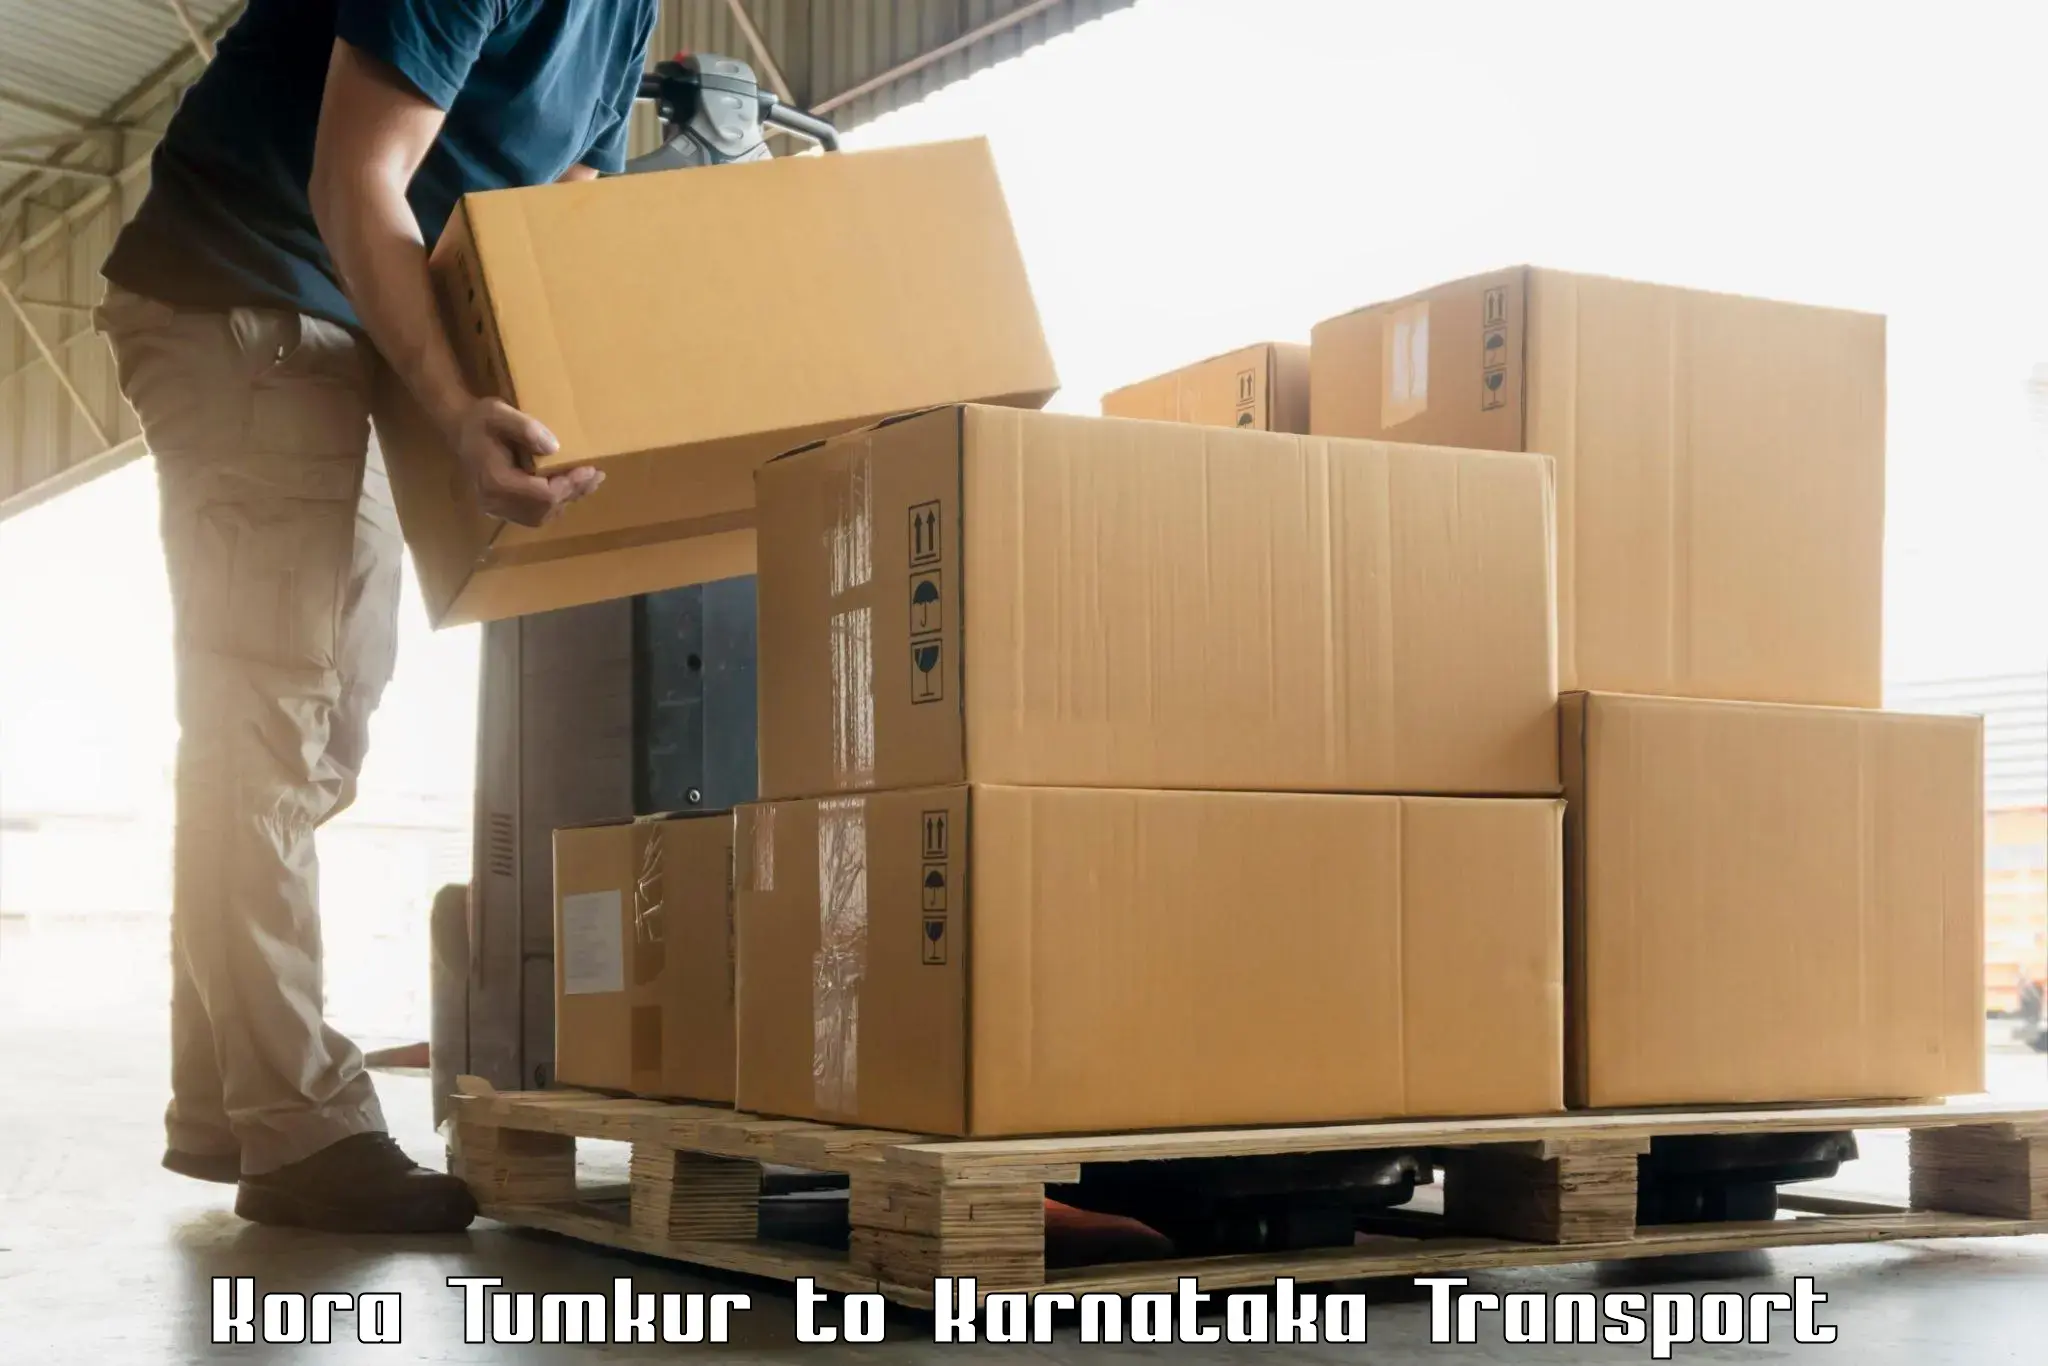 Online transport booking Kora Tumkur to Madikeri